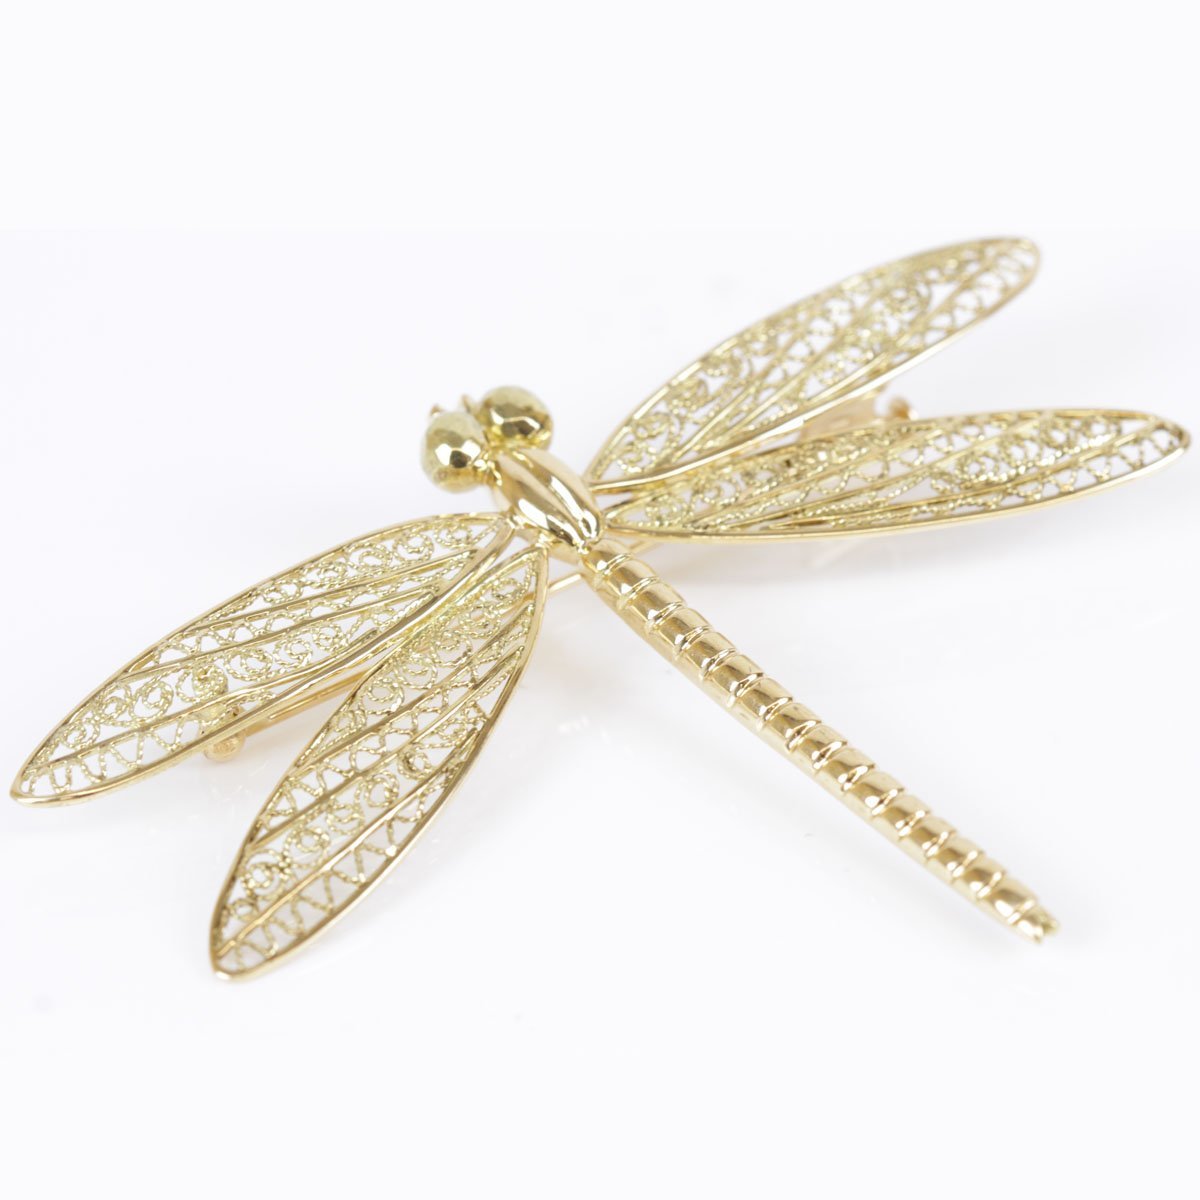 はわすれま】 ブローチ K18 とんぼ 宝石 真珠 ゴールド 蜻蛉 昆虫 ピン